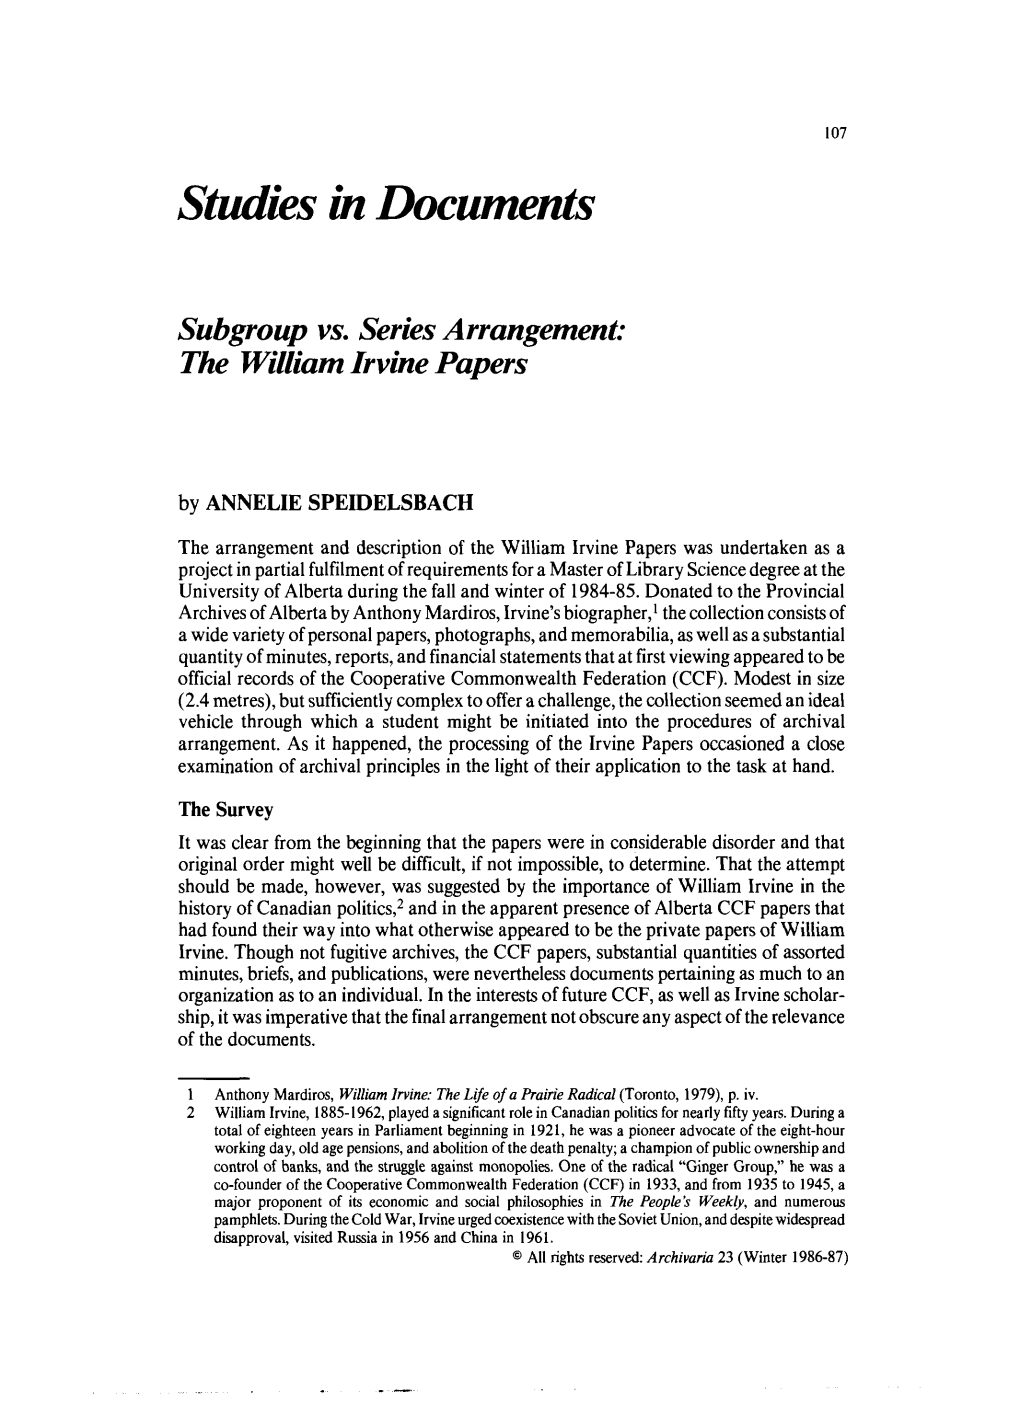 Subgroup Vs. Series Arrangement: the William Irvine Papers